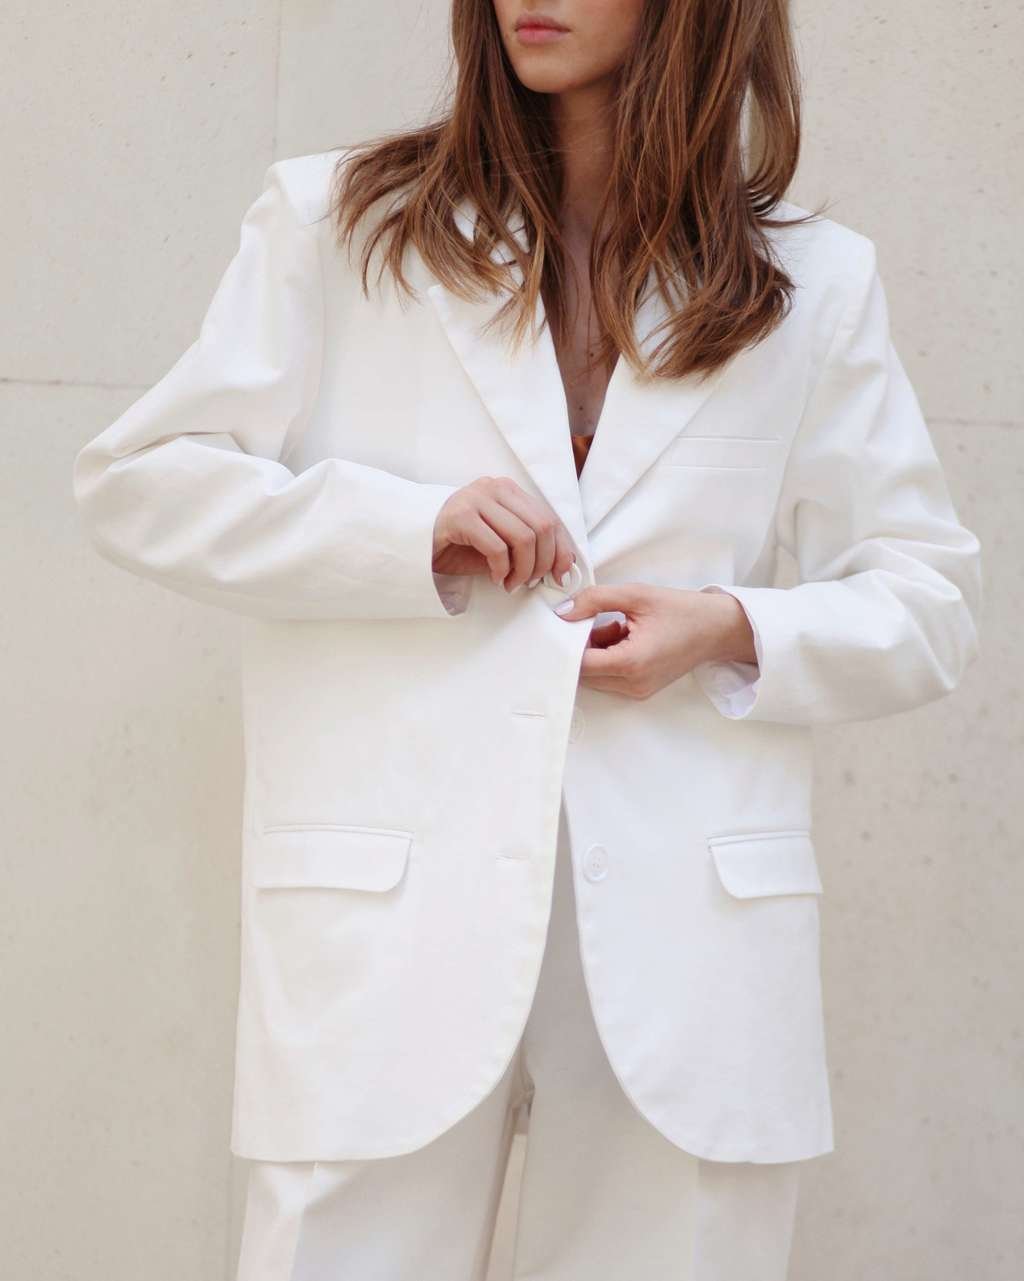 Женский белый пиджак